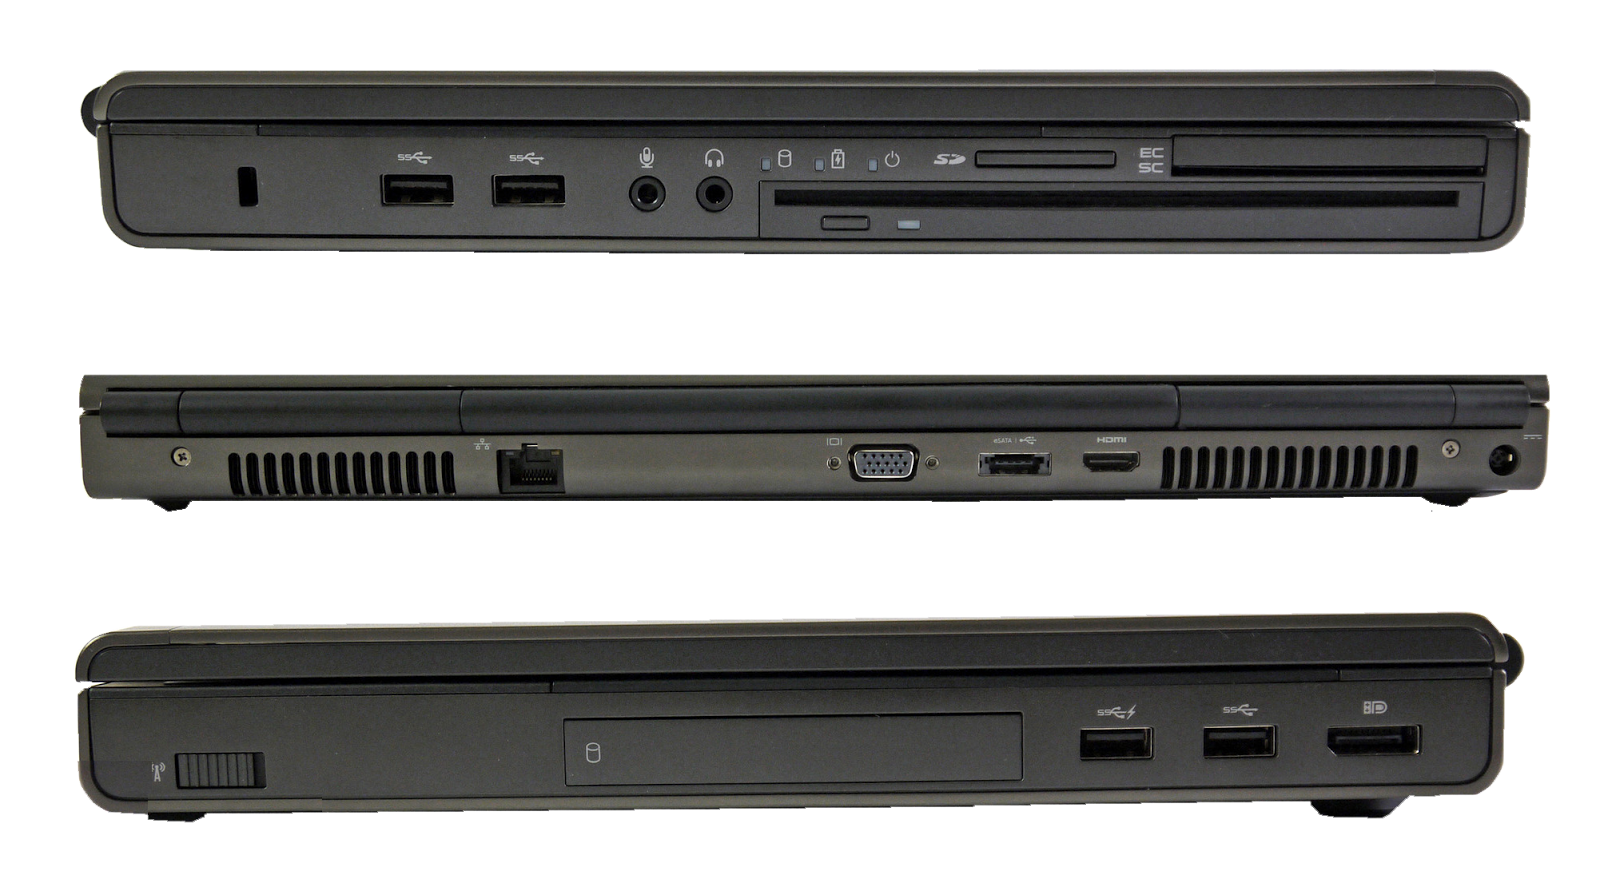 Laptopthienphuc - Khẳng định đẳng cấp cùng Dell Precision M4800, máy trạm Siêu bền    Dell+Precision+M4800--c